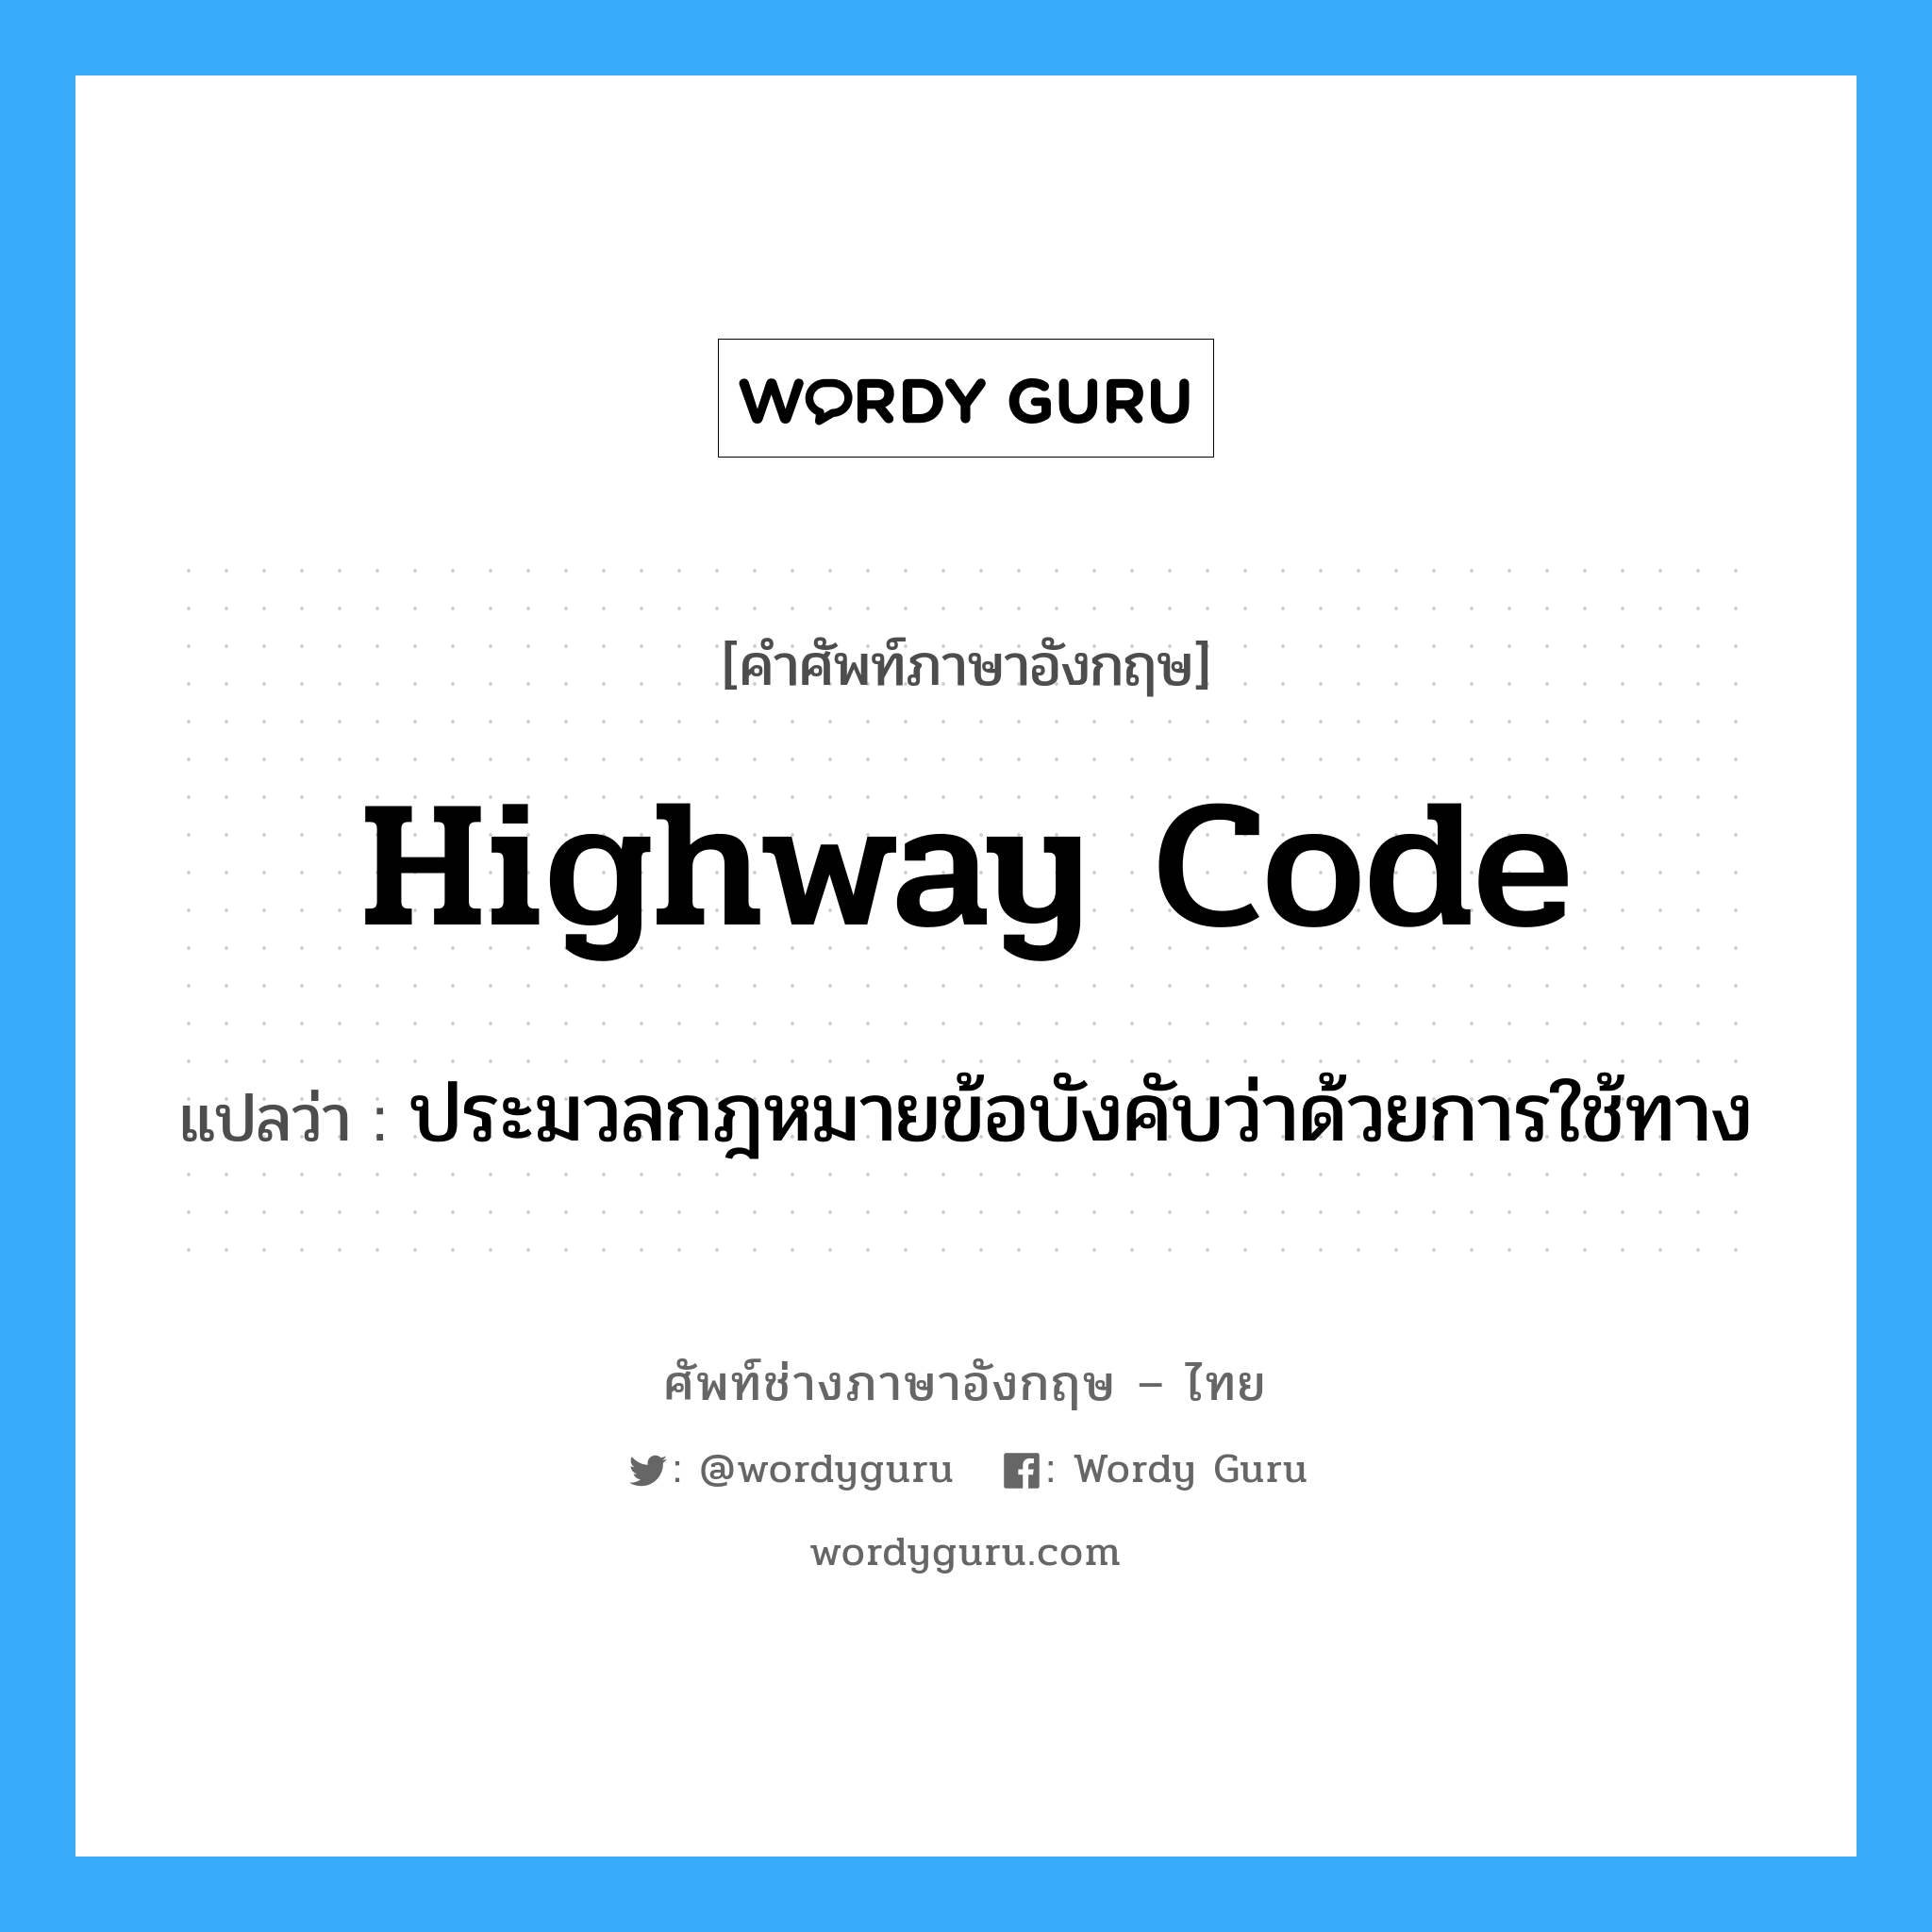 highway code แปลว่า?, คำศัพท์ช่างภาษาอังกฤษ - ไทย highway code คำศัพท์ภาษาอังกฤษ highway code แปลว่า ประมวลกฎหมายข้อบังคับว่าด้วยการใช้ทาง